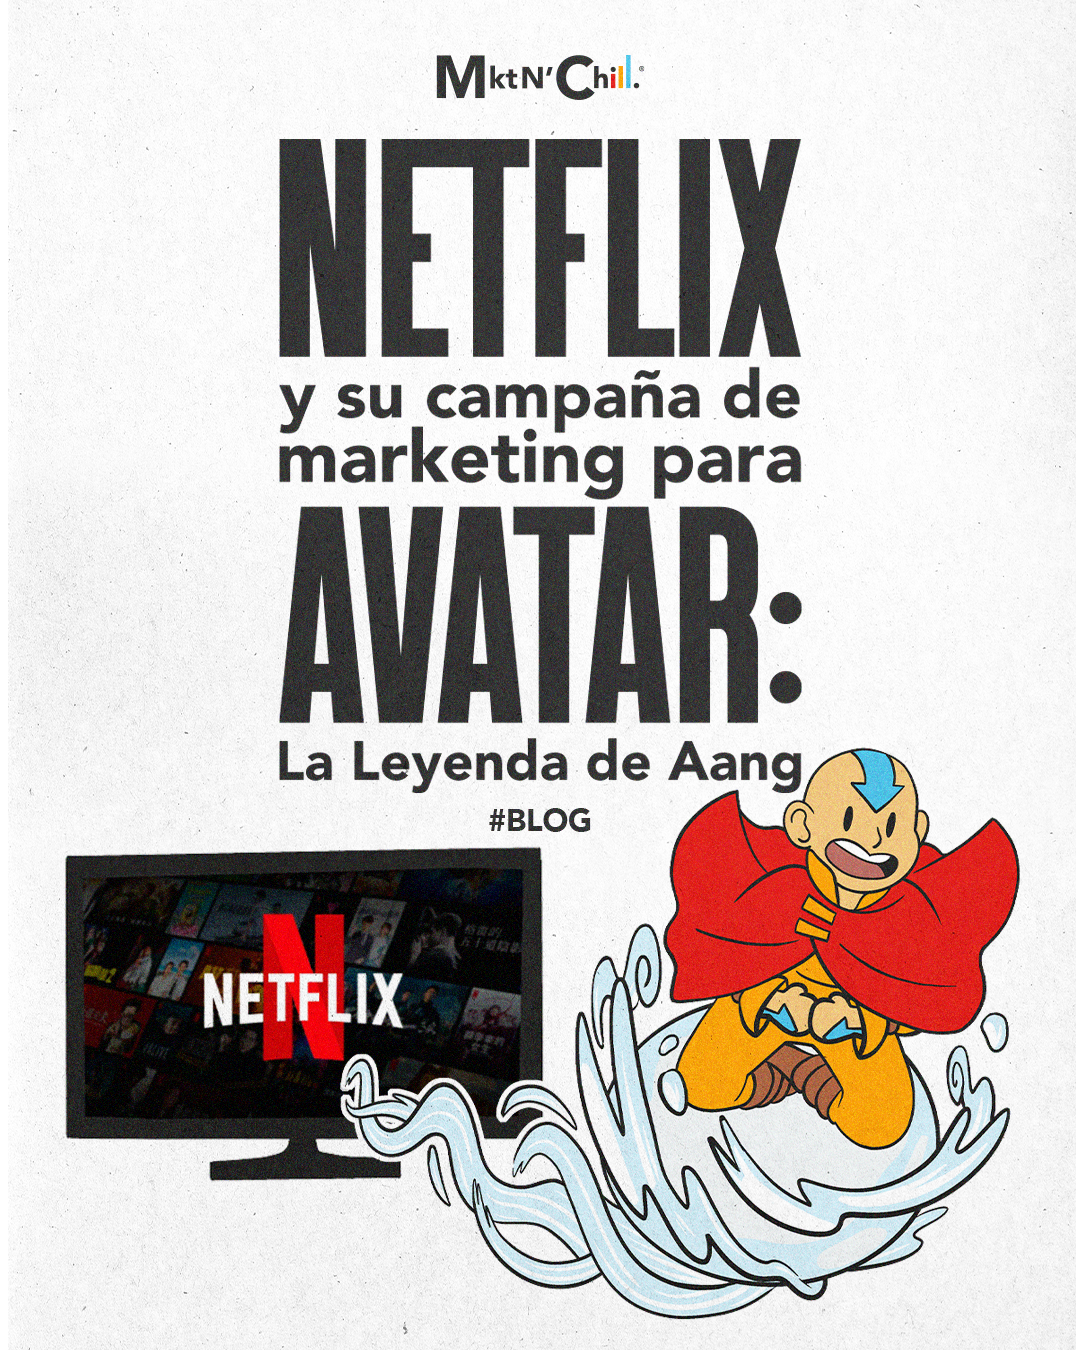 Featured image for “Netflix y su campaña de marketing para Avatar: La Leyenda de Aang”